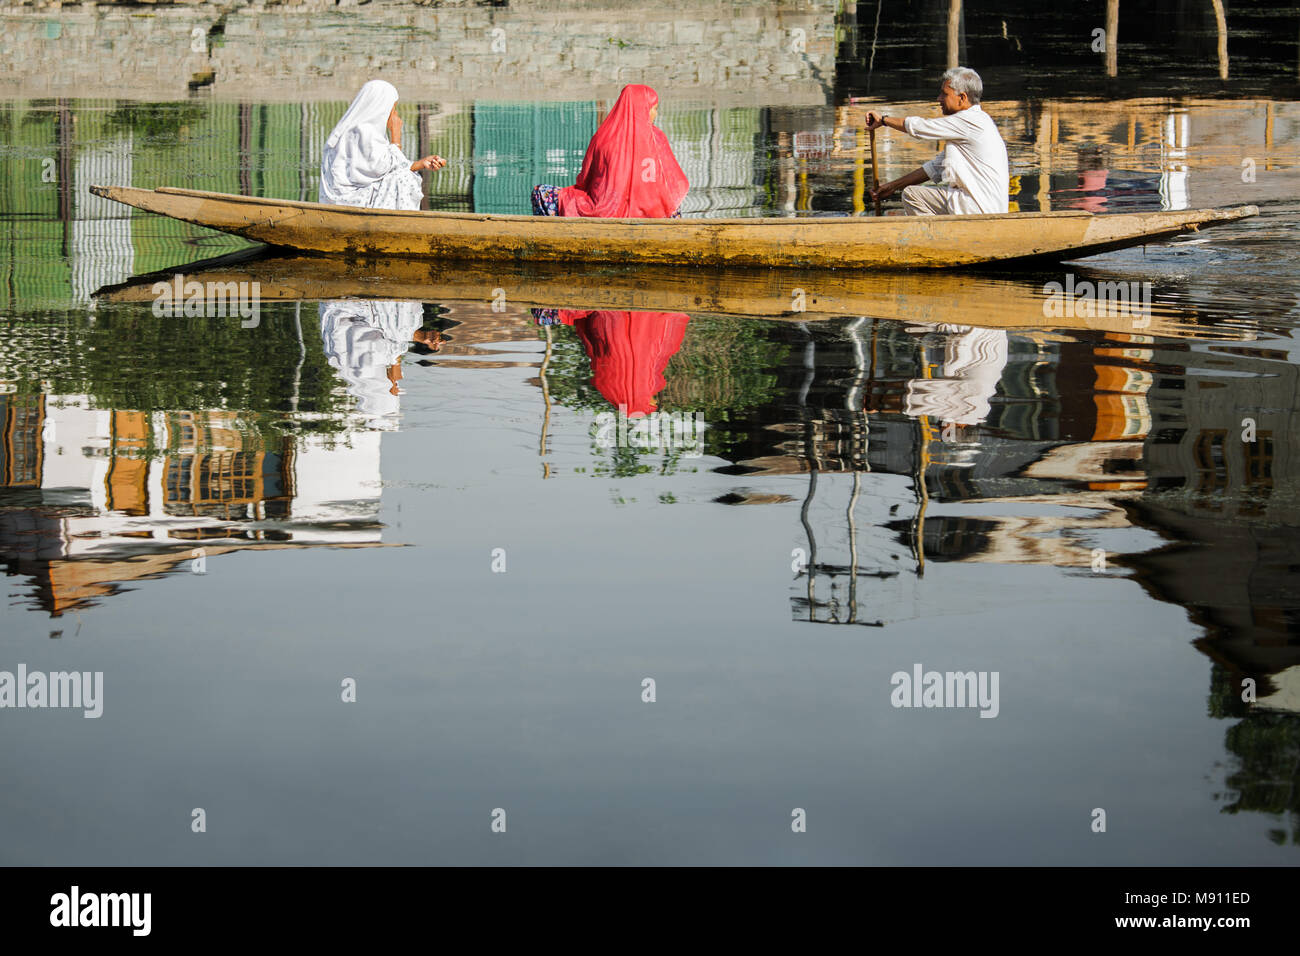 Spiegel Bild Foto von zwei muslimischen Frauen mit an der Rückseite der Kamera und Boot Mann setzte die Frauen über die berühmte Dal Lake von Srinagar in Kaschmir Stockfoto